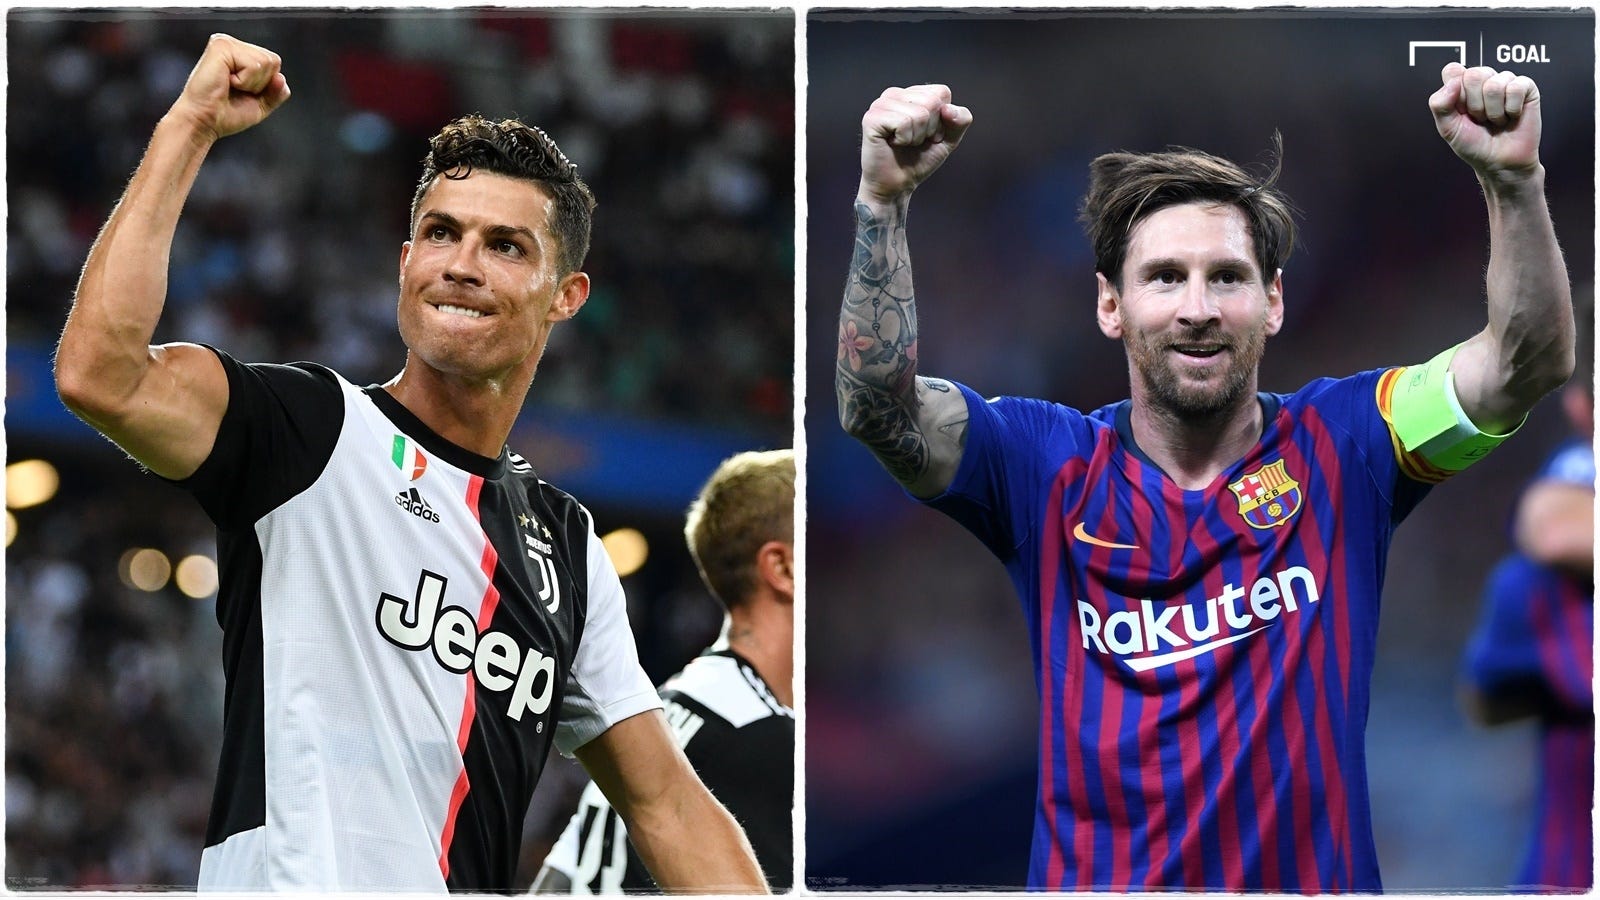 Fuoriclasse all'ultima chiamata: chi ha più da perdere tra Messi e CR7?